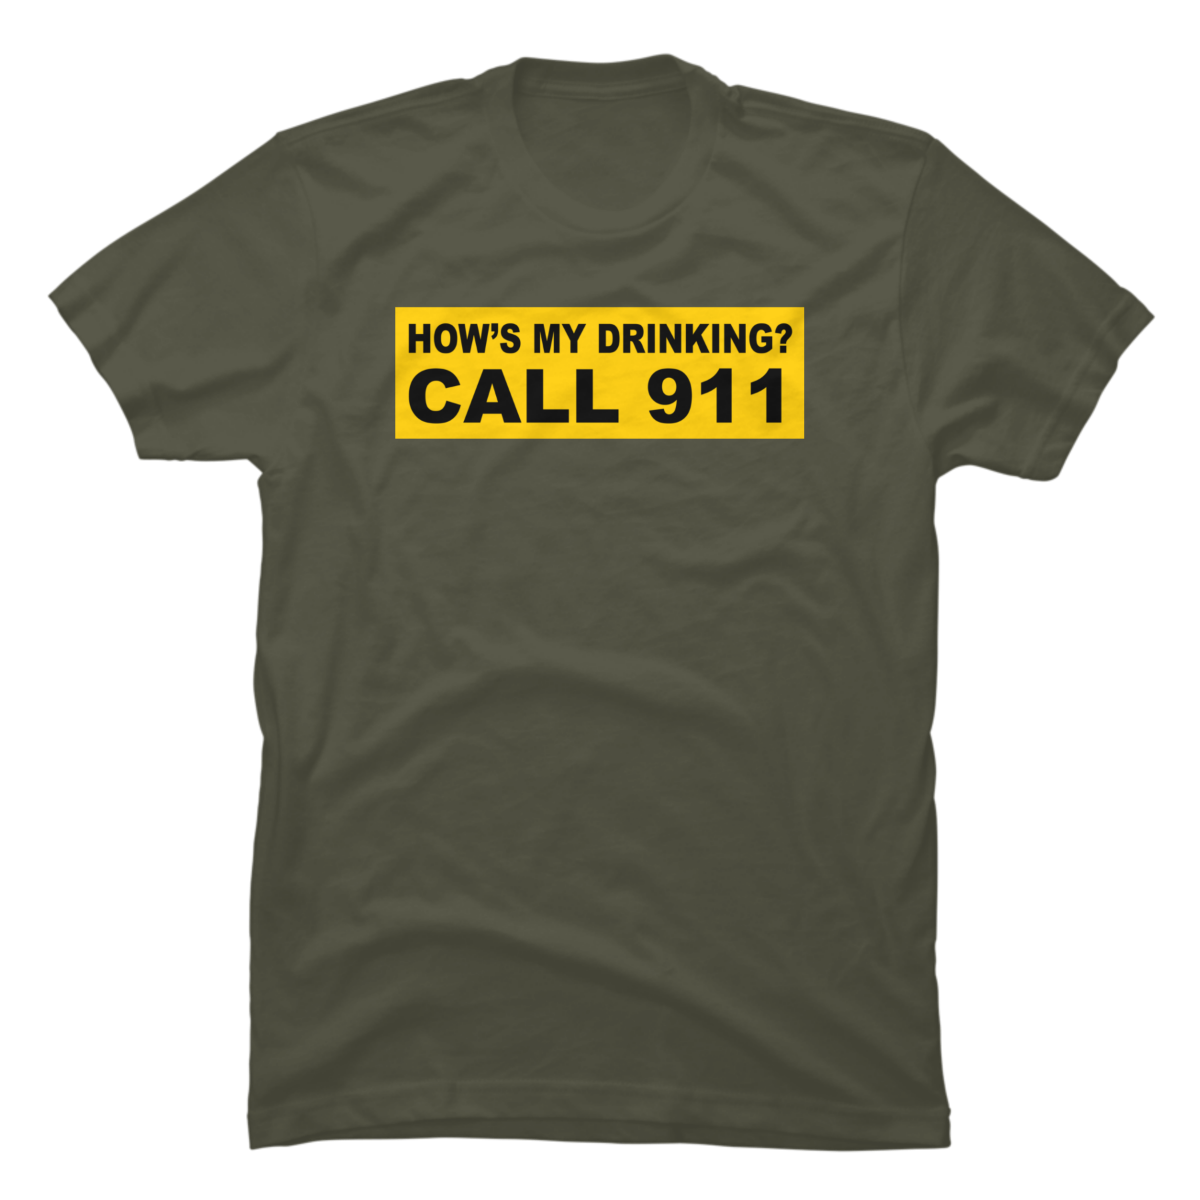 911 shirt designs